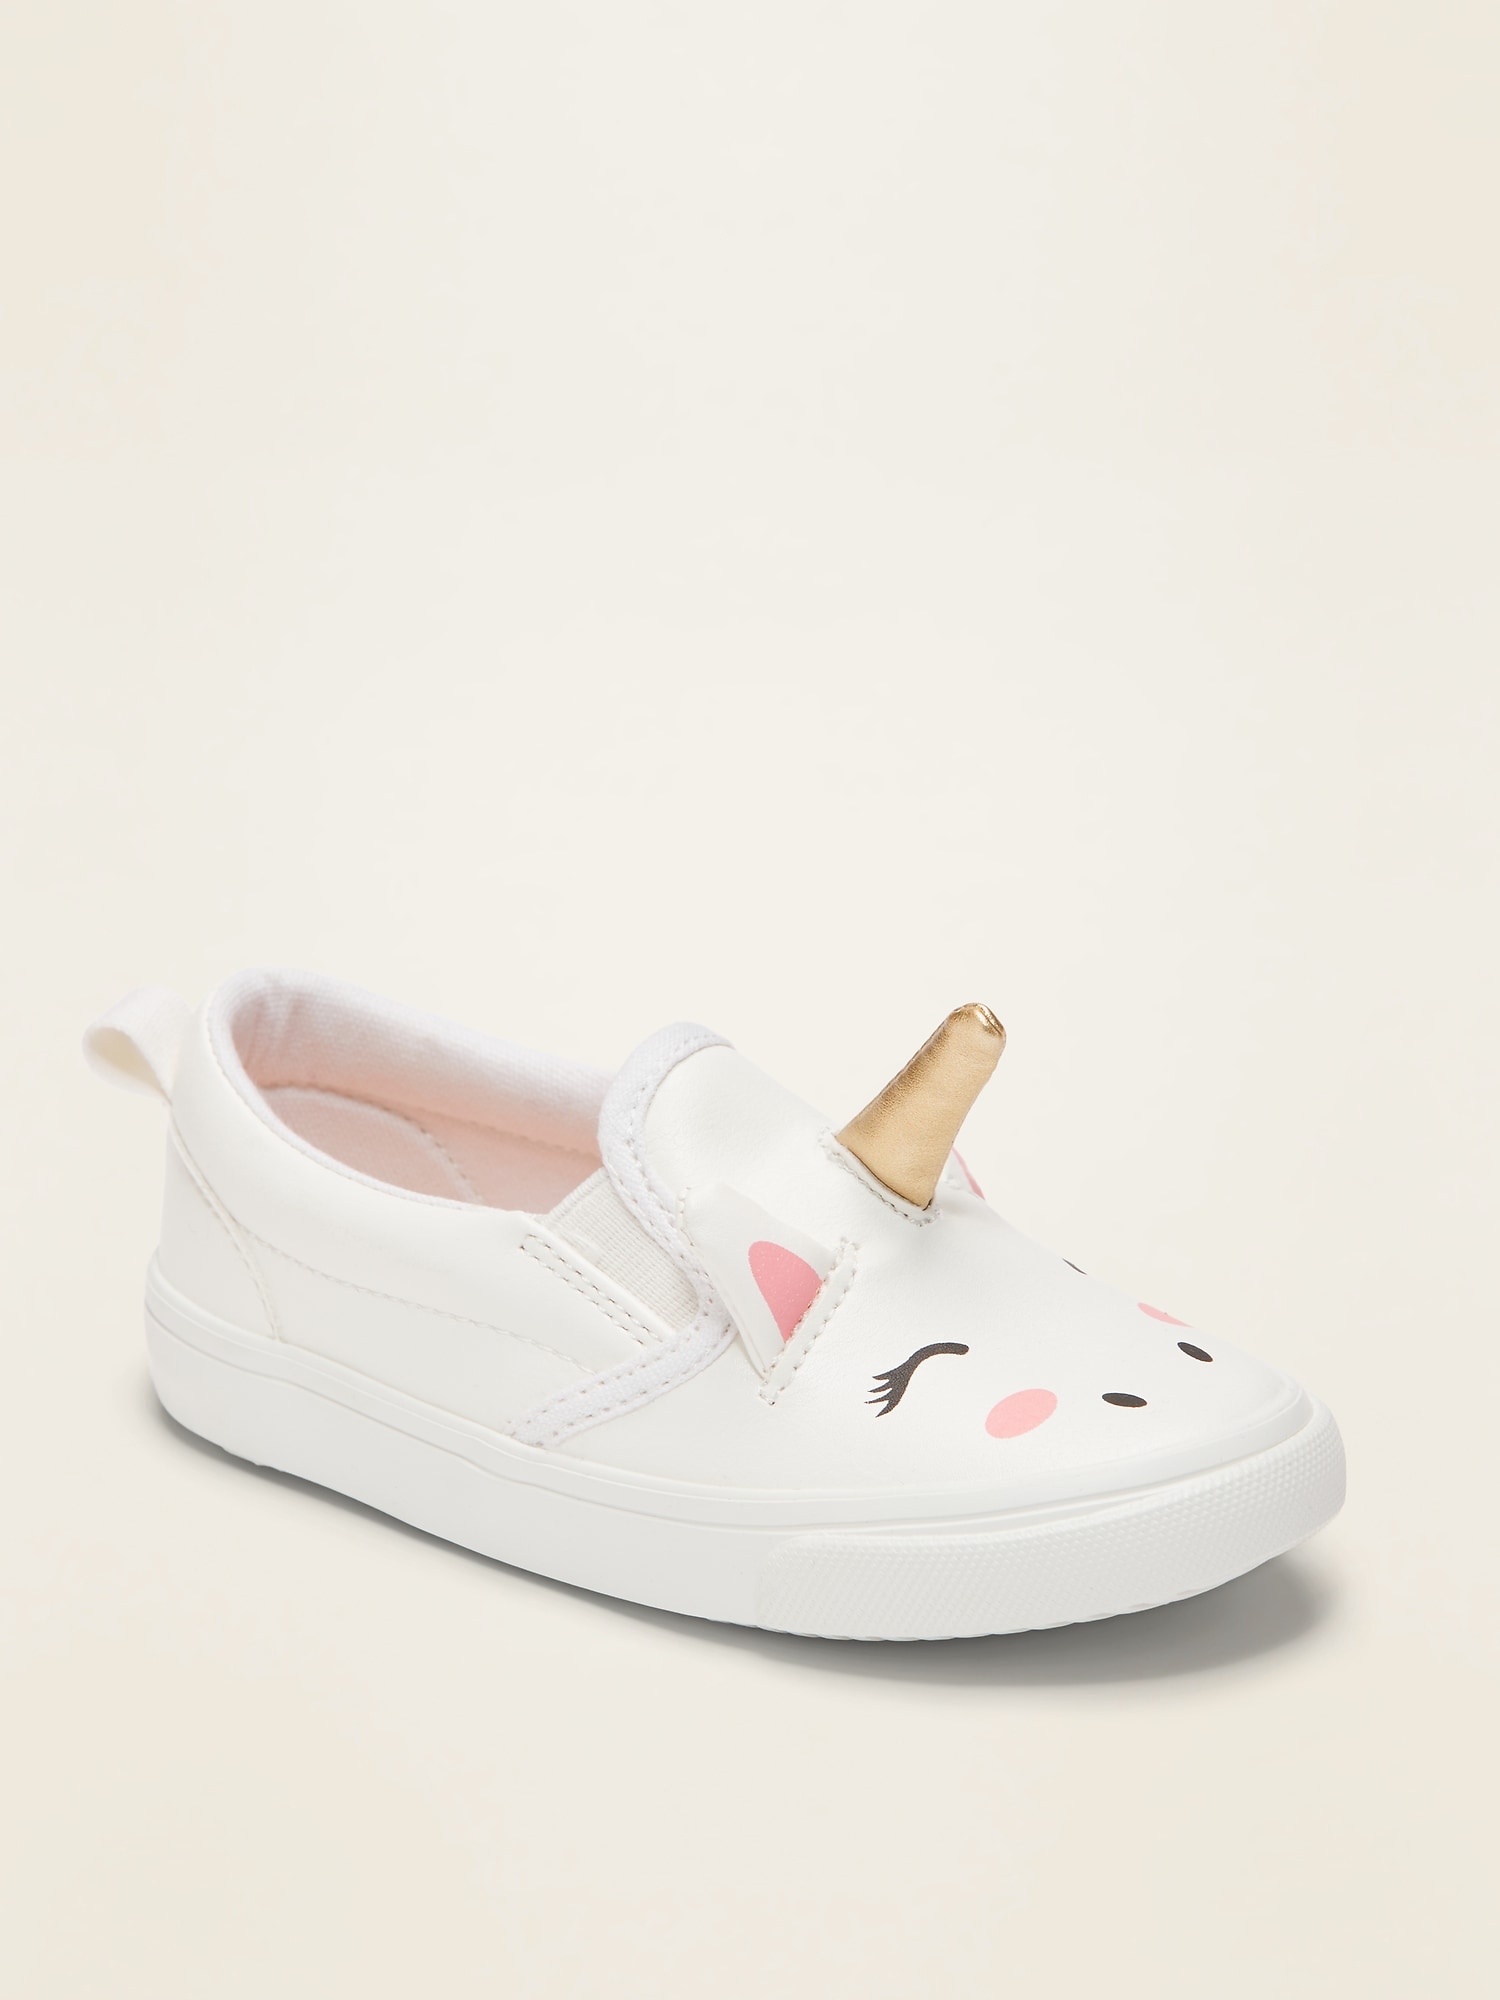 Unicorn Slip-Ons For Toddler Girls 